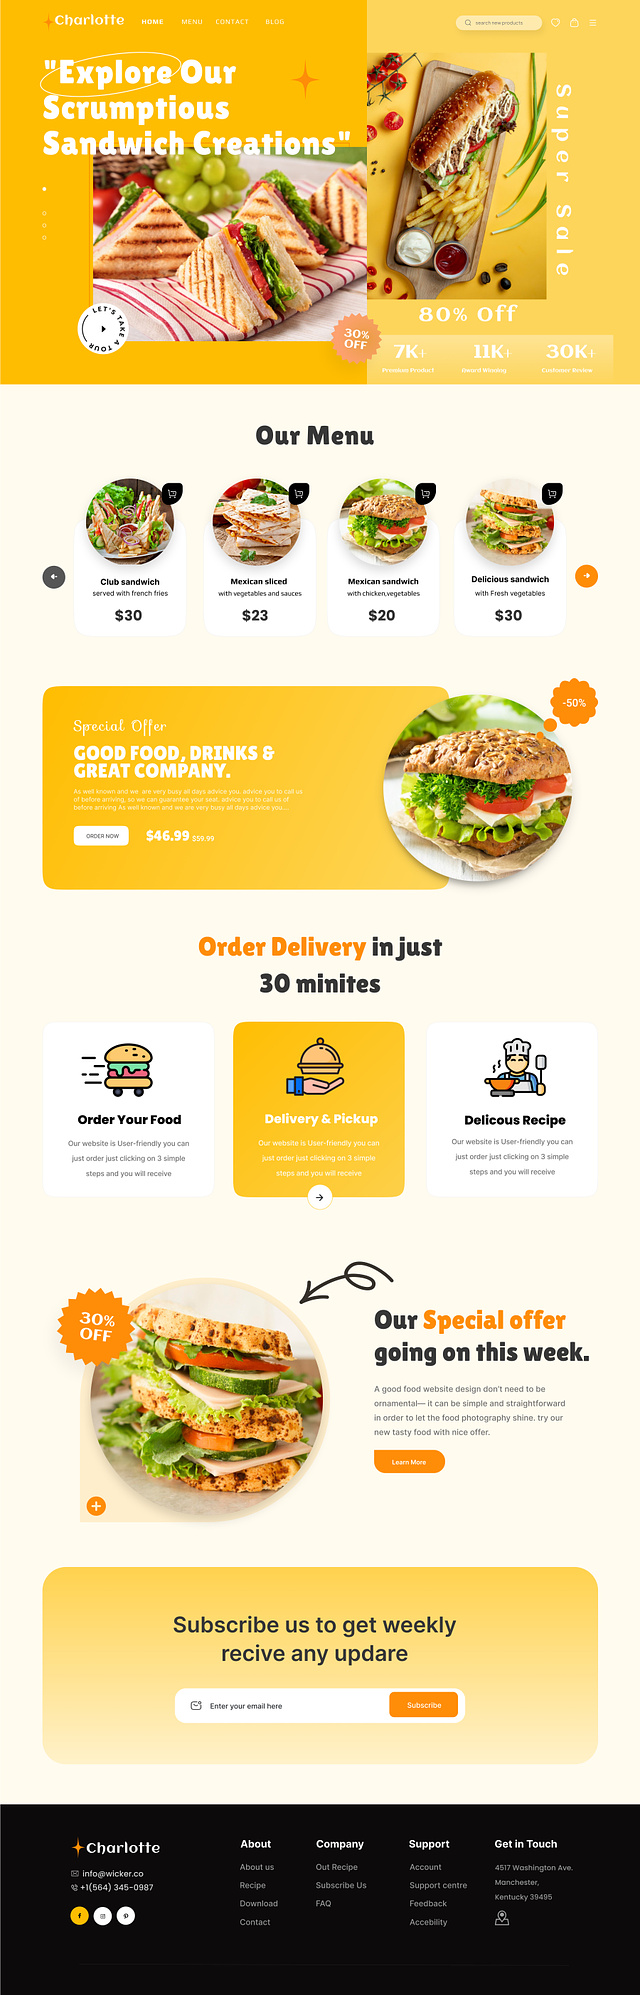 Mẫu thiết kế website Nhà hàng đẹp 26 dribbble_com/shots/22254167-Food-Delivery-Landing-page-Design